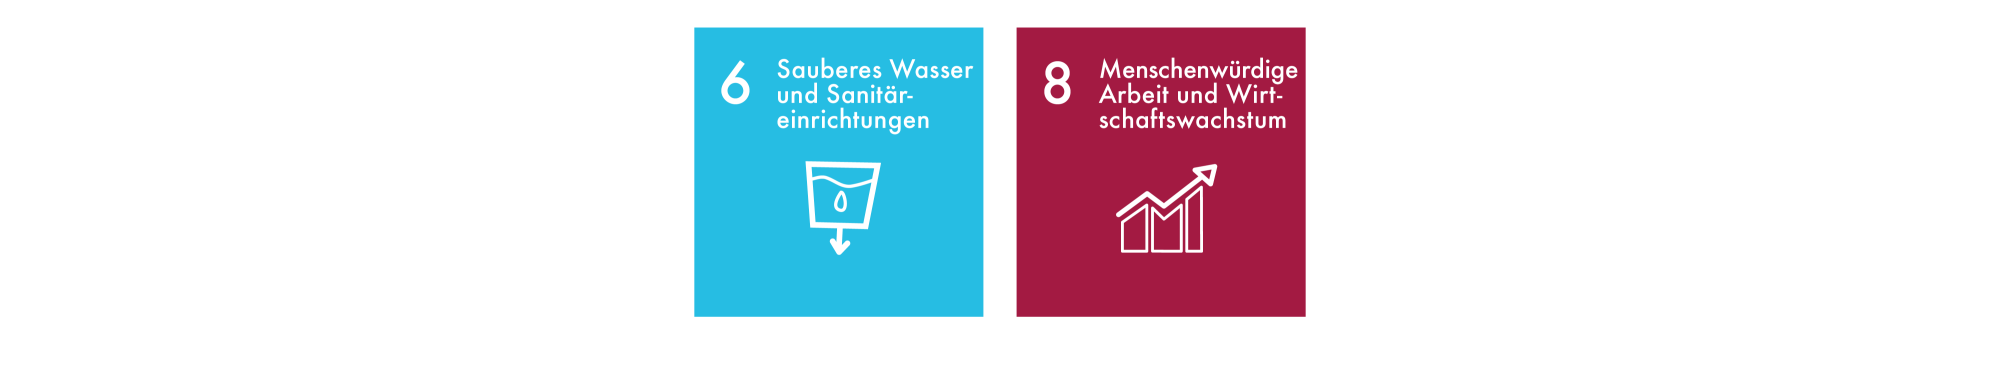 Sustainable Development Goals 6-8 DE